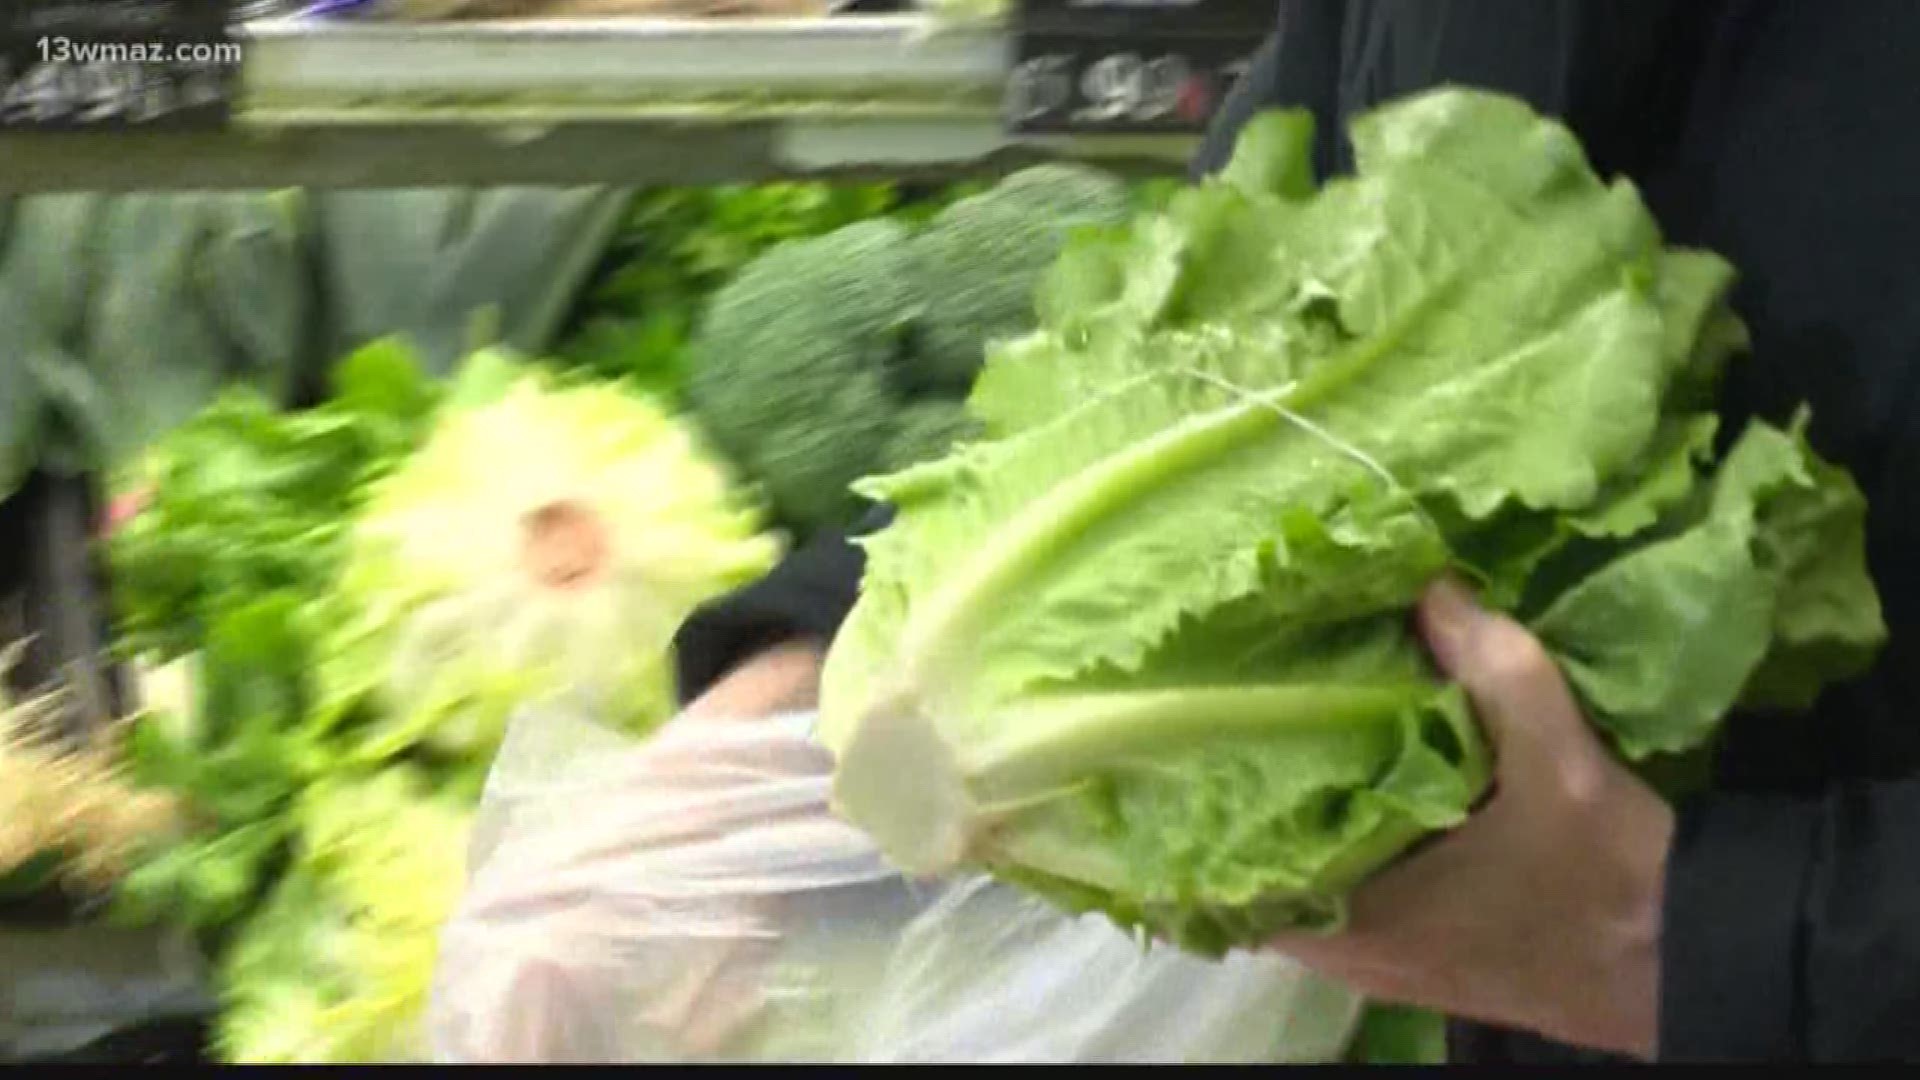 Romaine lettuce recall impacting Central Georgia